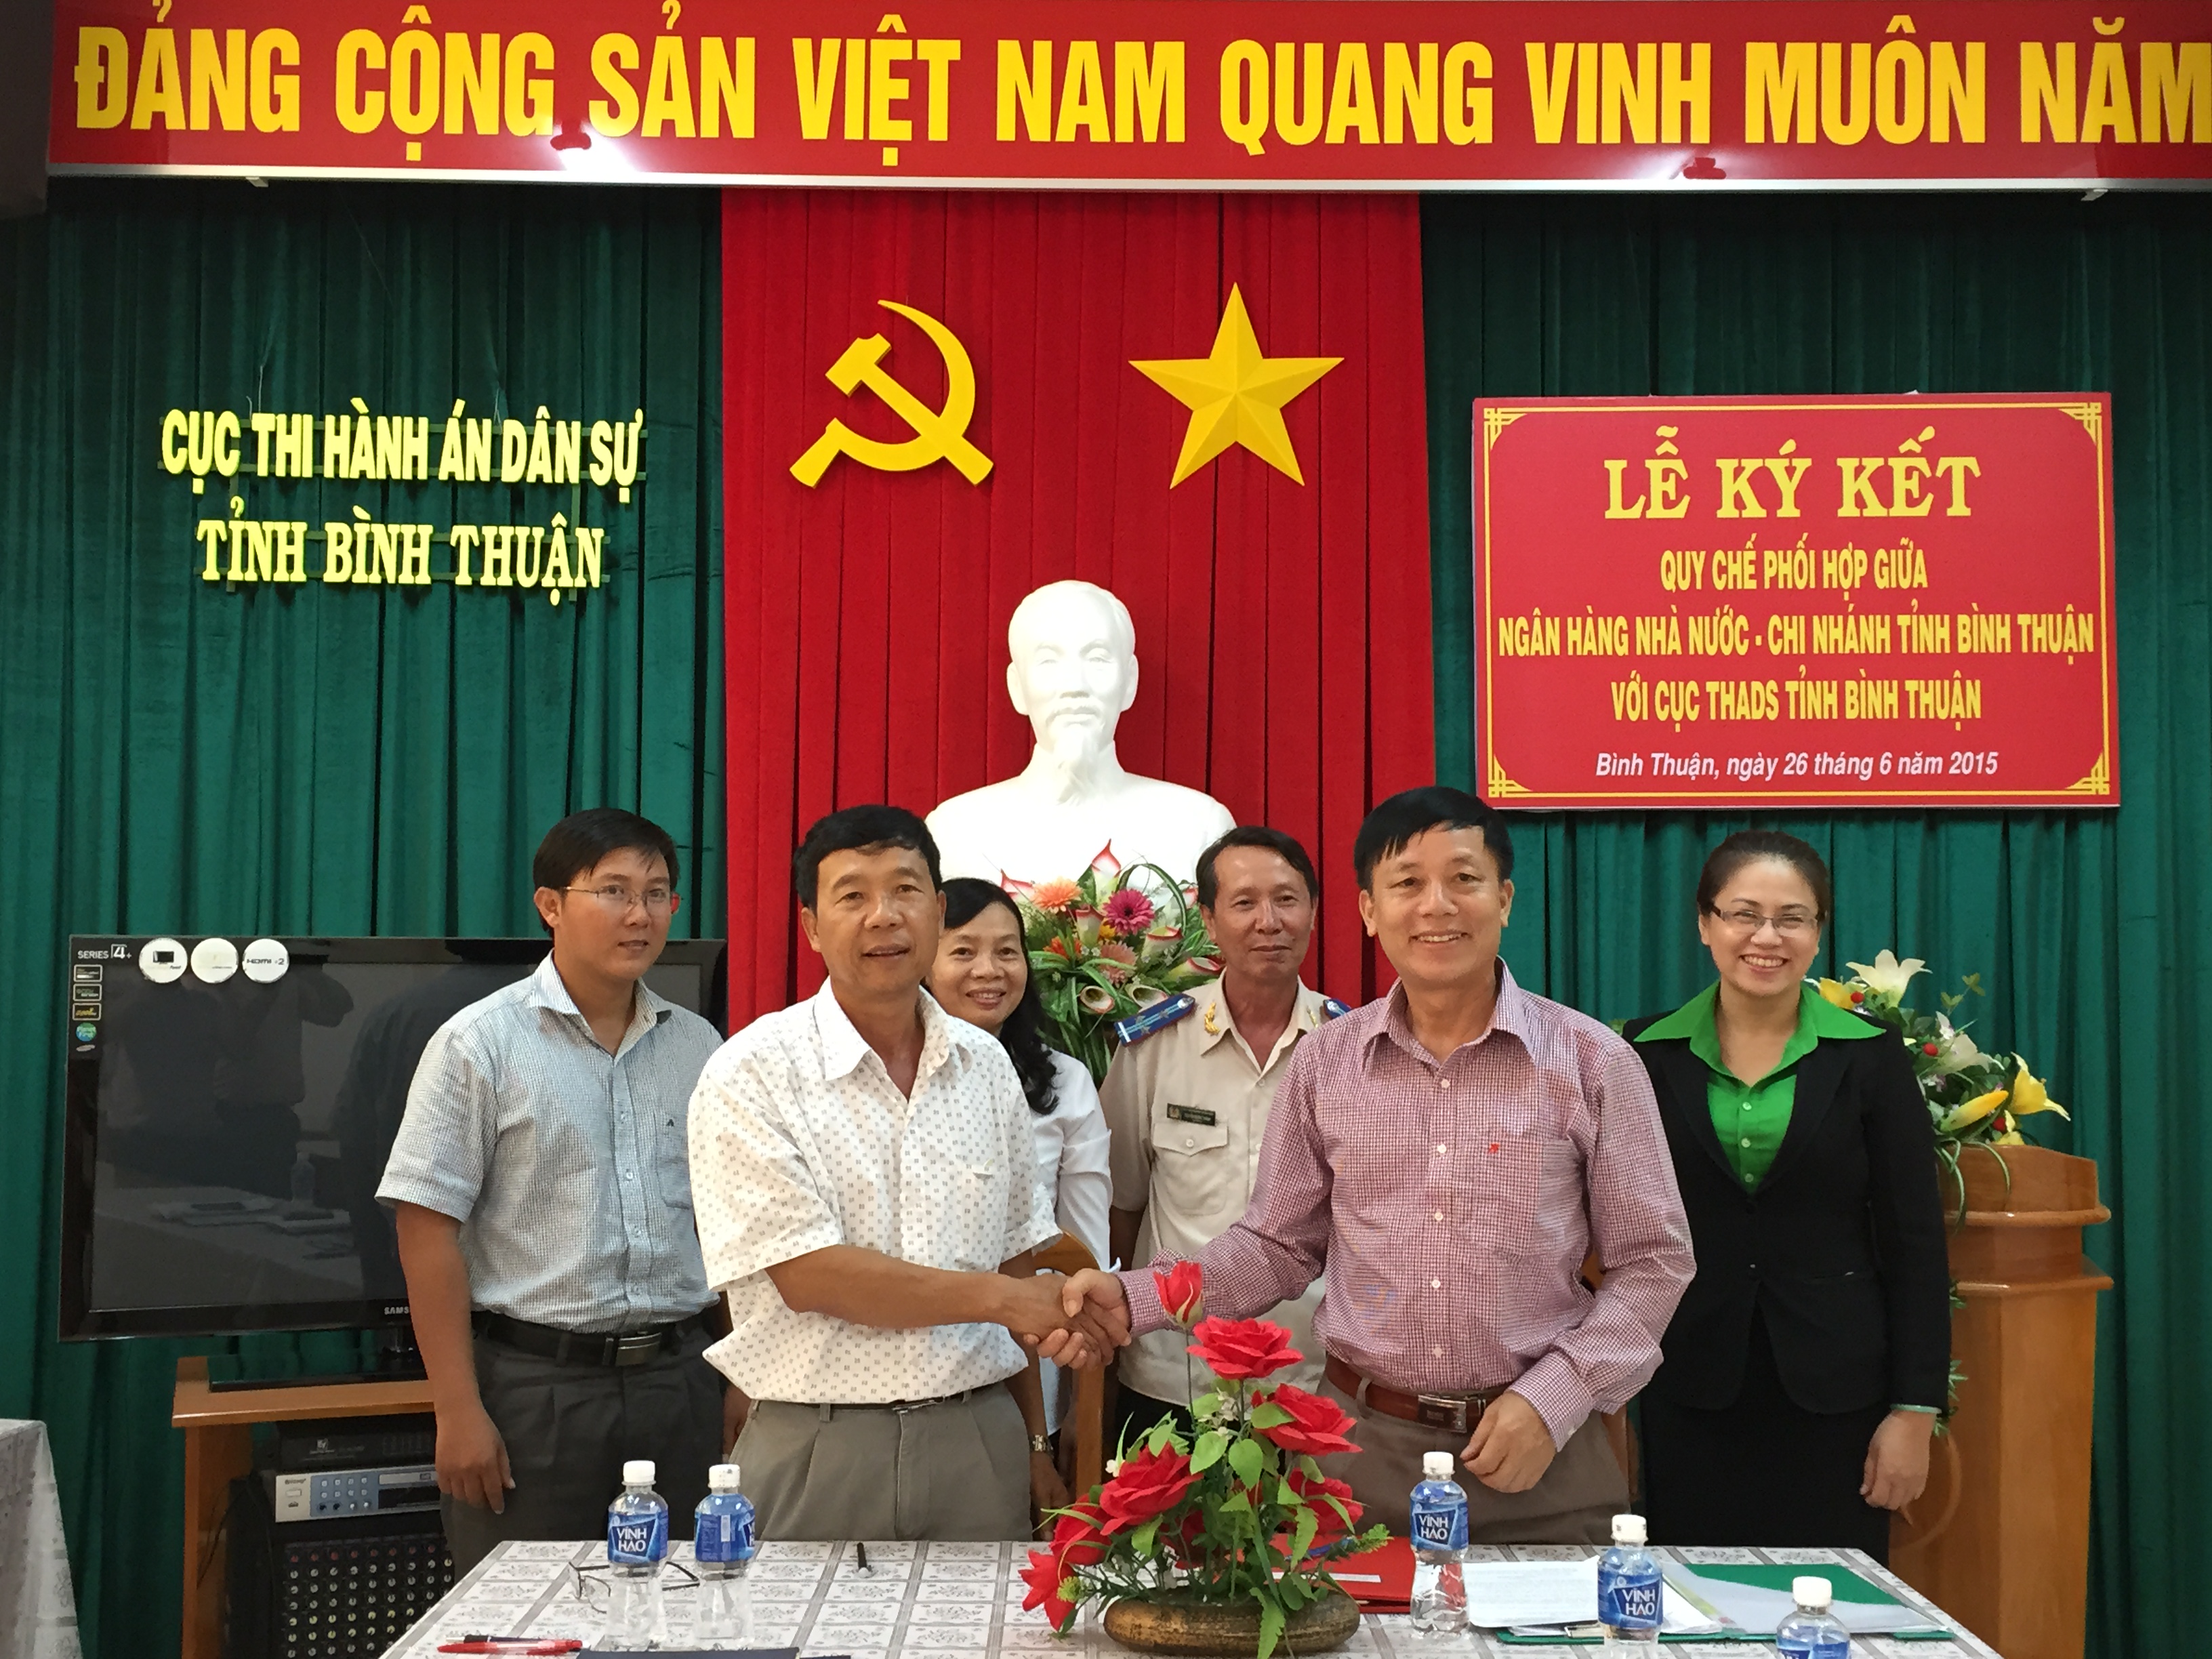 Lễ ký kết Quy chế phối hợp giữa Ngân hàng Nhà nước chi nhánh Bình Thuận với Cục Thi hành án dân sự tỉnh Bình Thuận